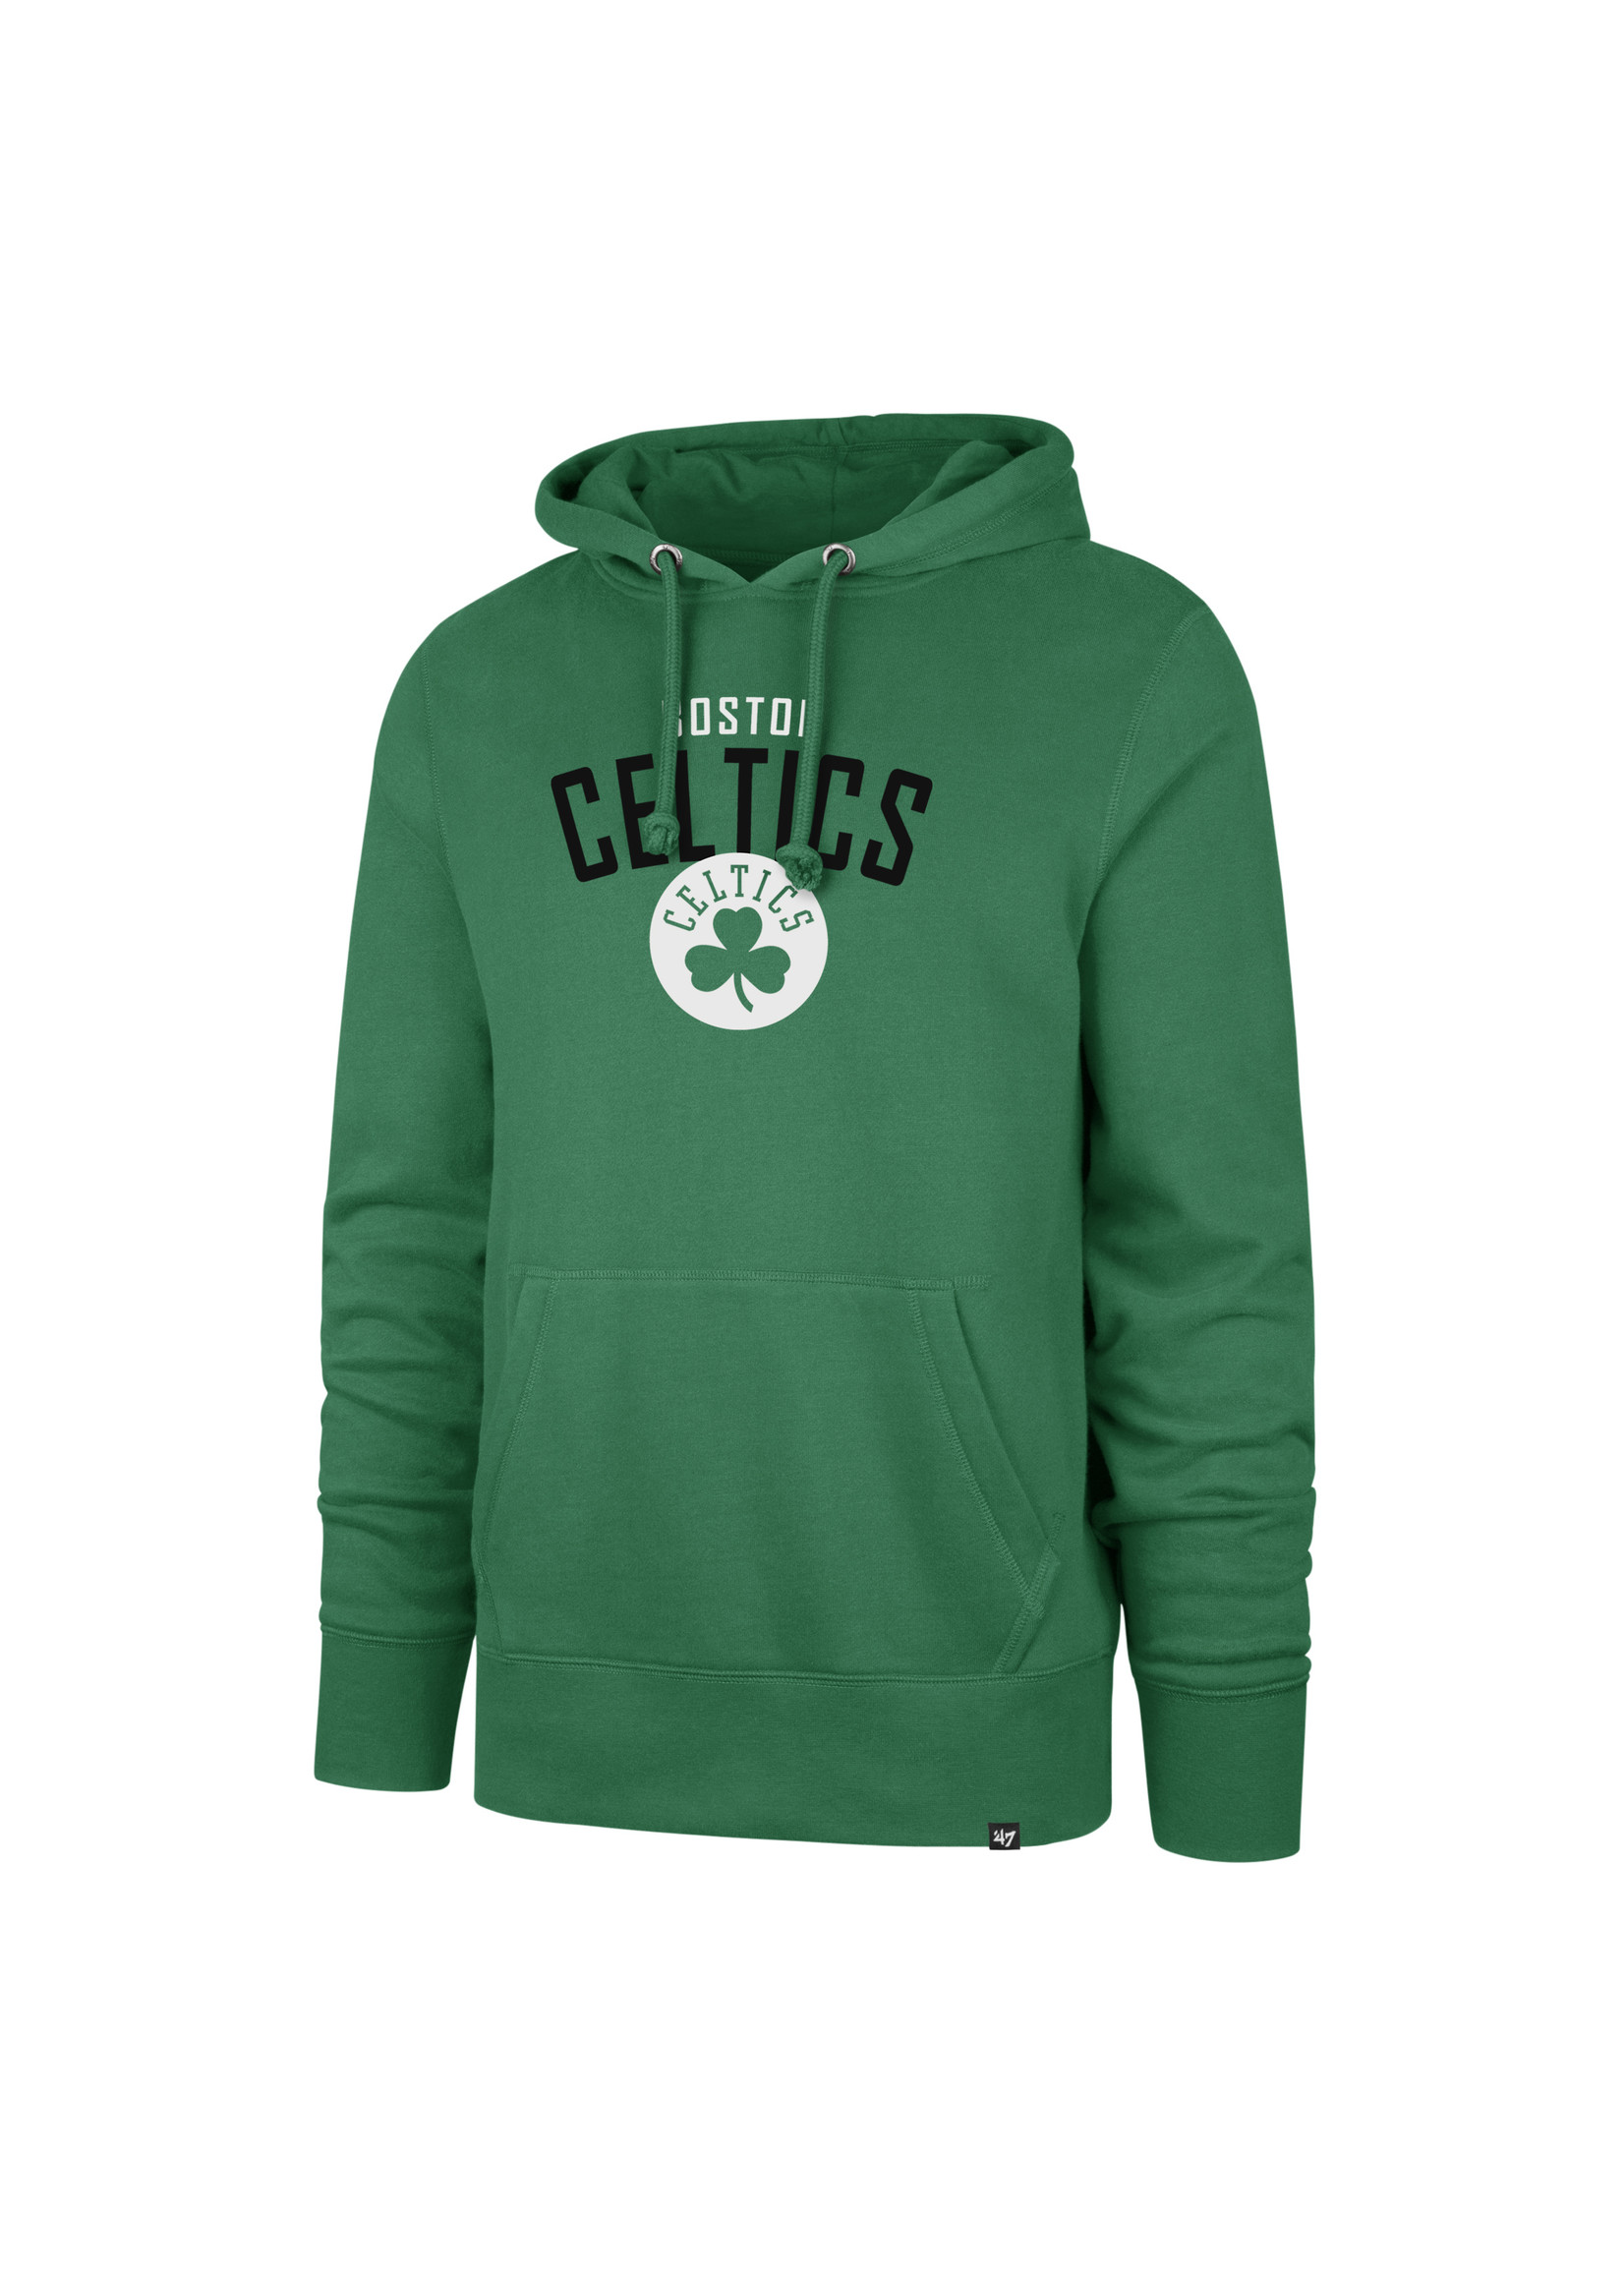 '47 Brand '47 Celtics Men's Pullover